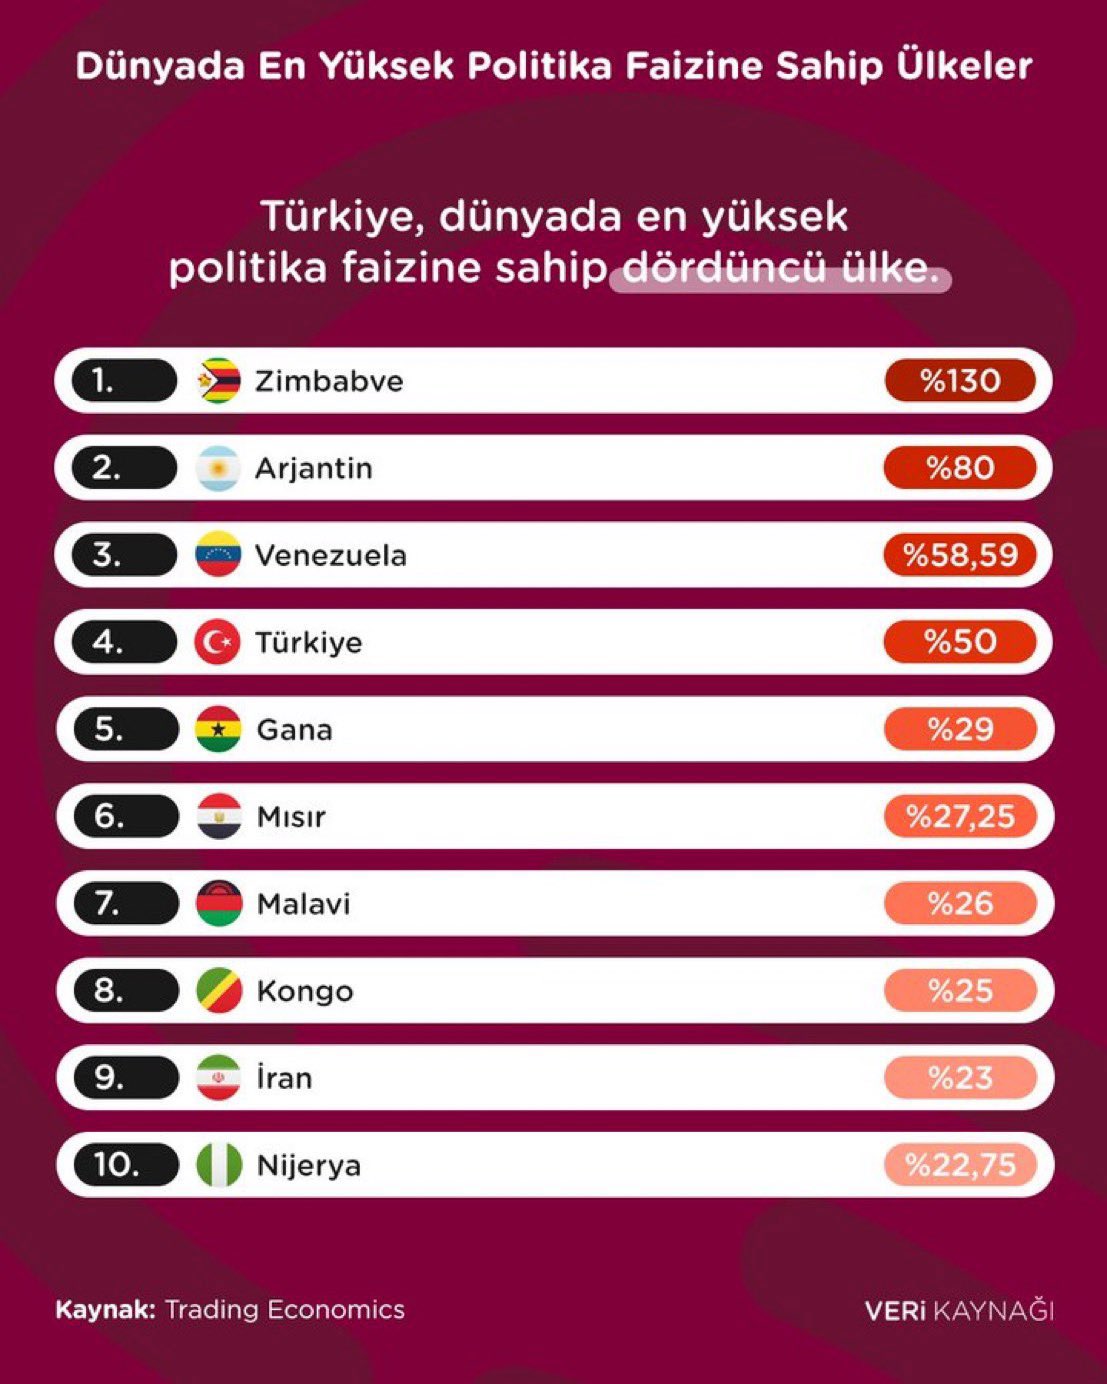 Dünyada en yüksek politika faizine sahip dördüncü ülke Türkiye